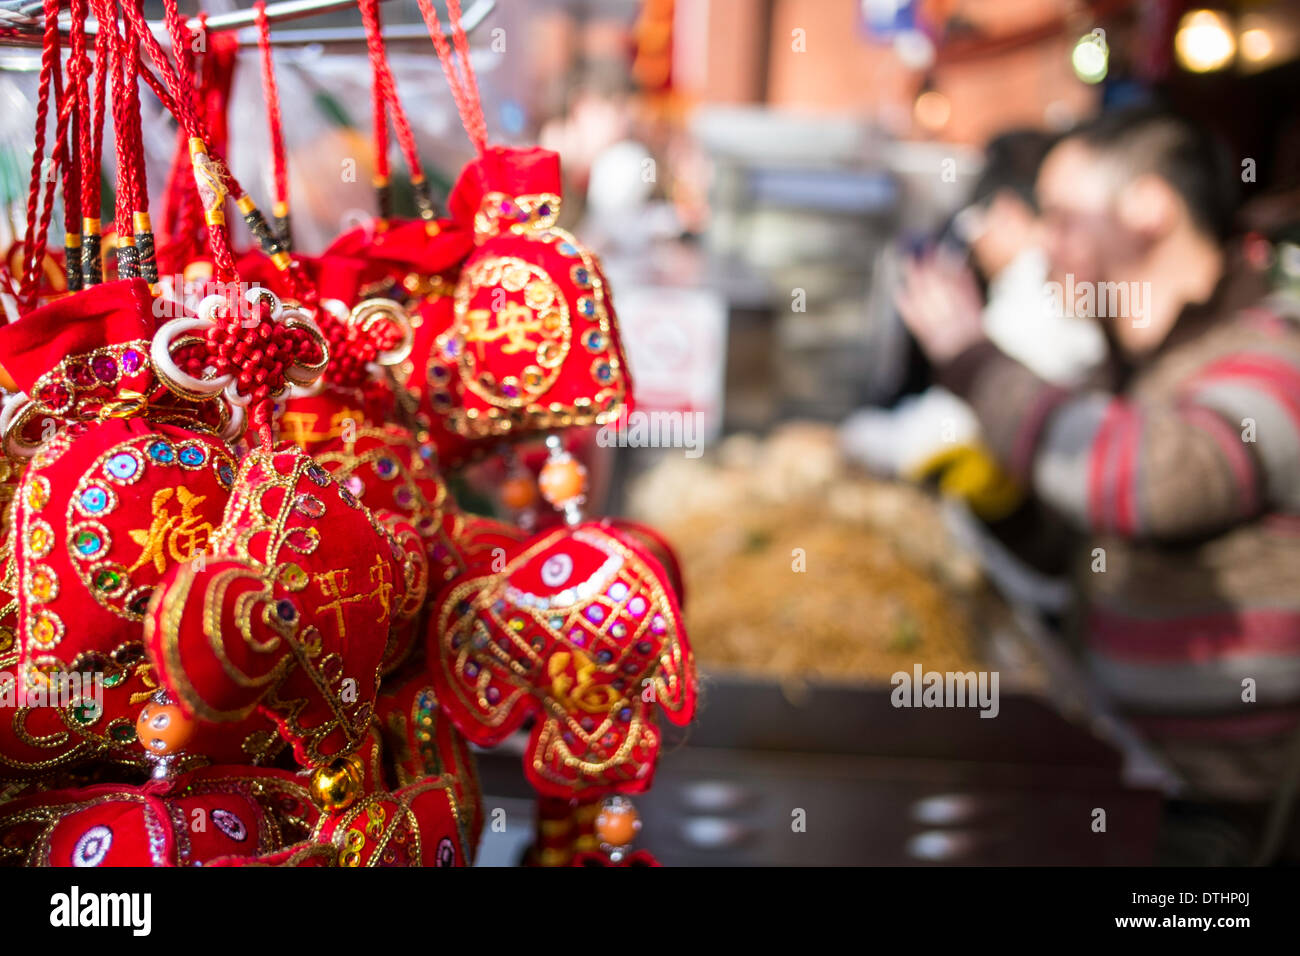 West End, Chinese New Year celebrations, London, United Kingdom Stock Photo